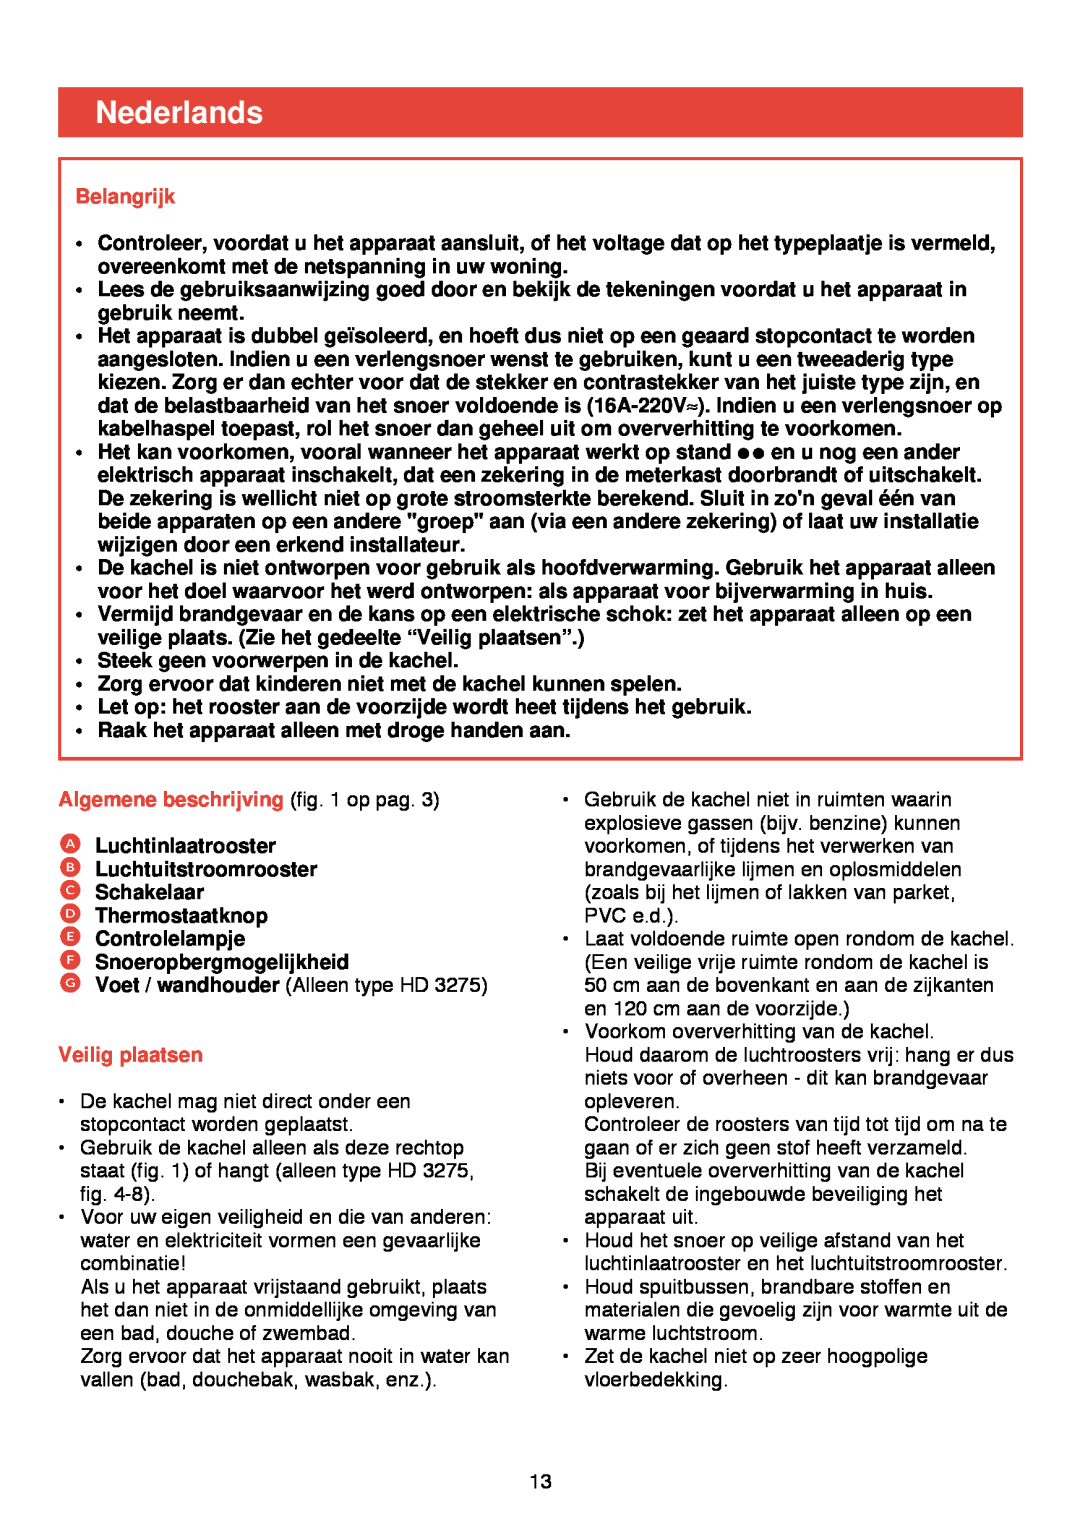 Philips HD 3274/75 manual Nederlands, Belangrijk, Algemene beschrijving op pag, Veilig plaatsen 